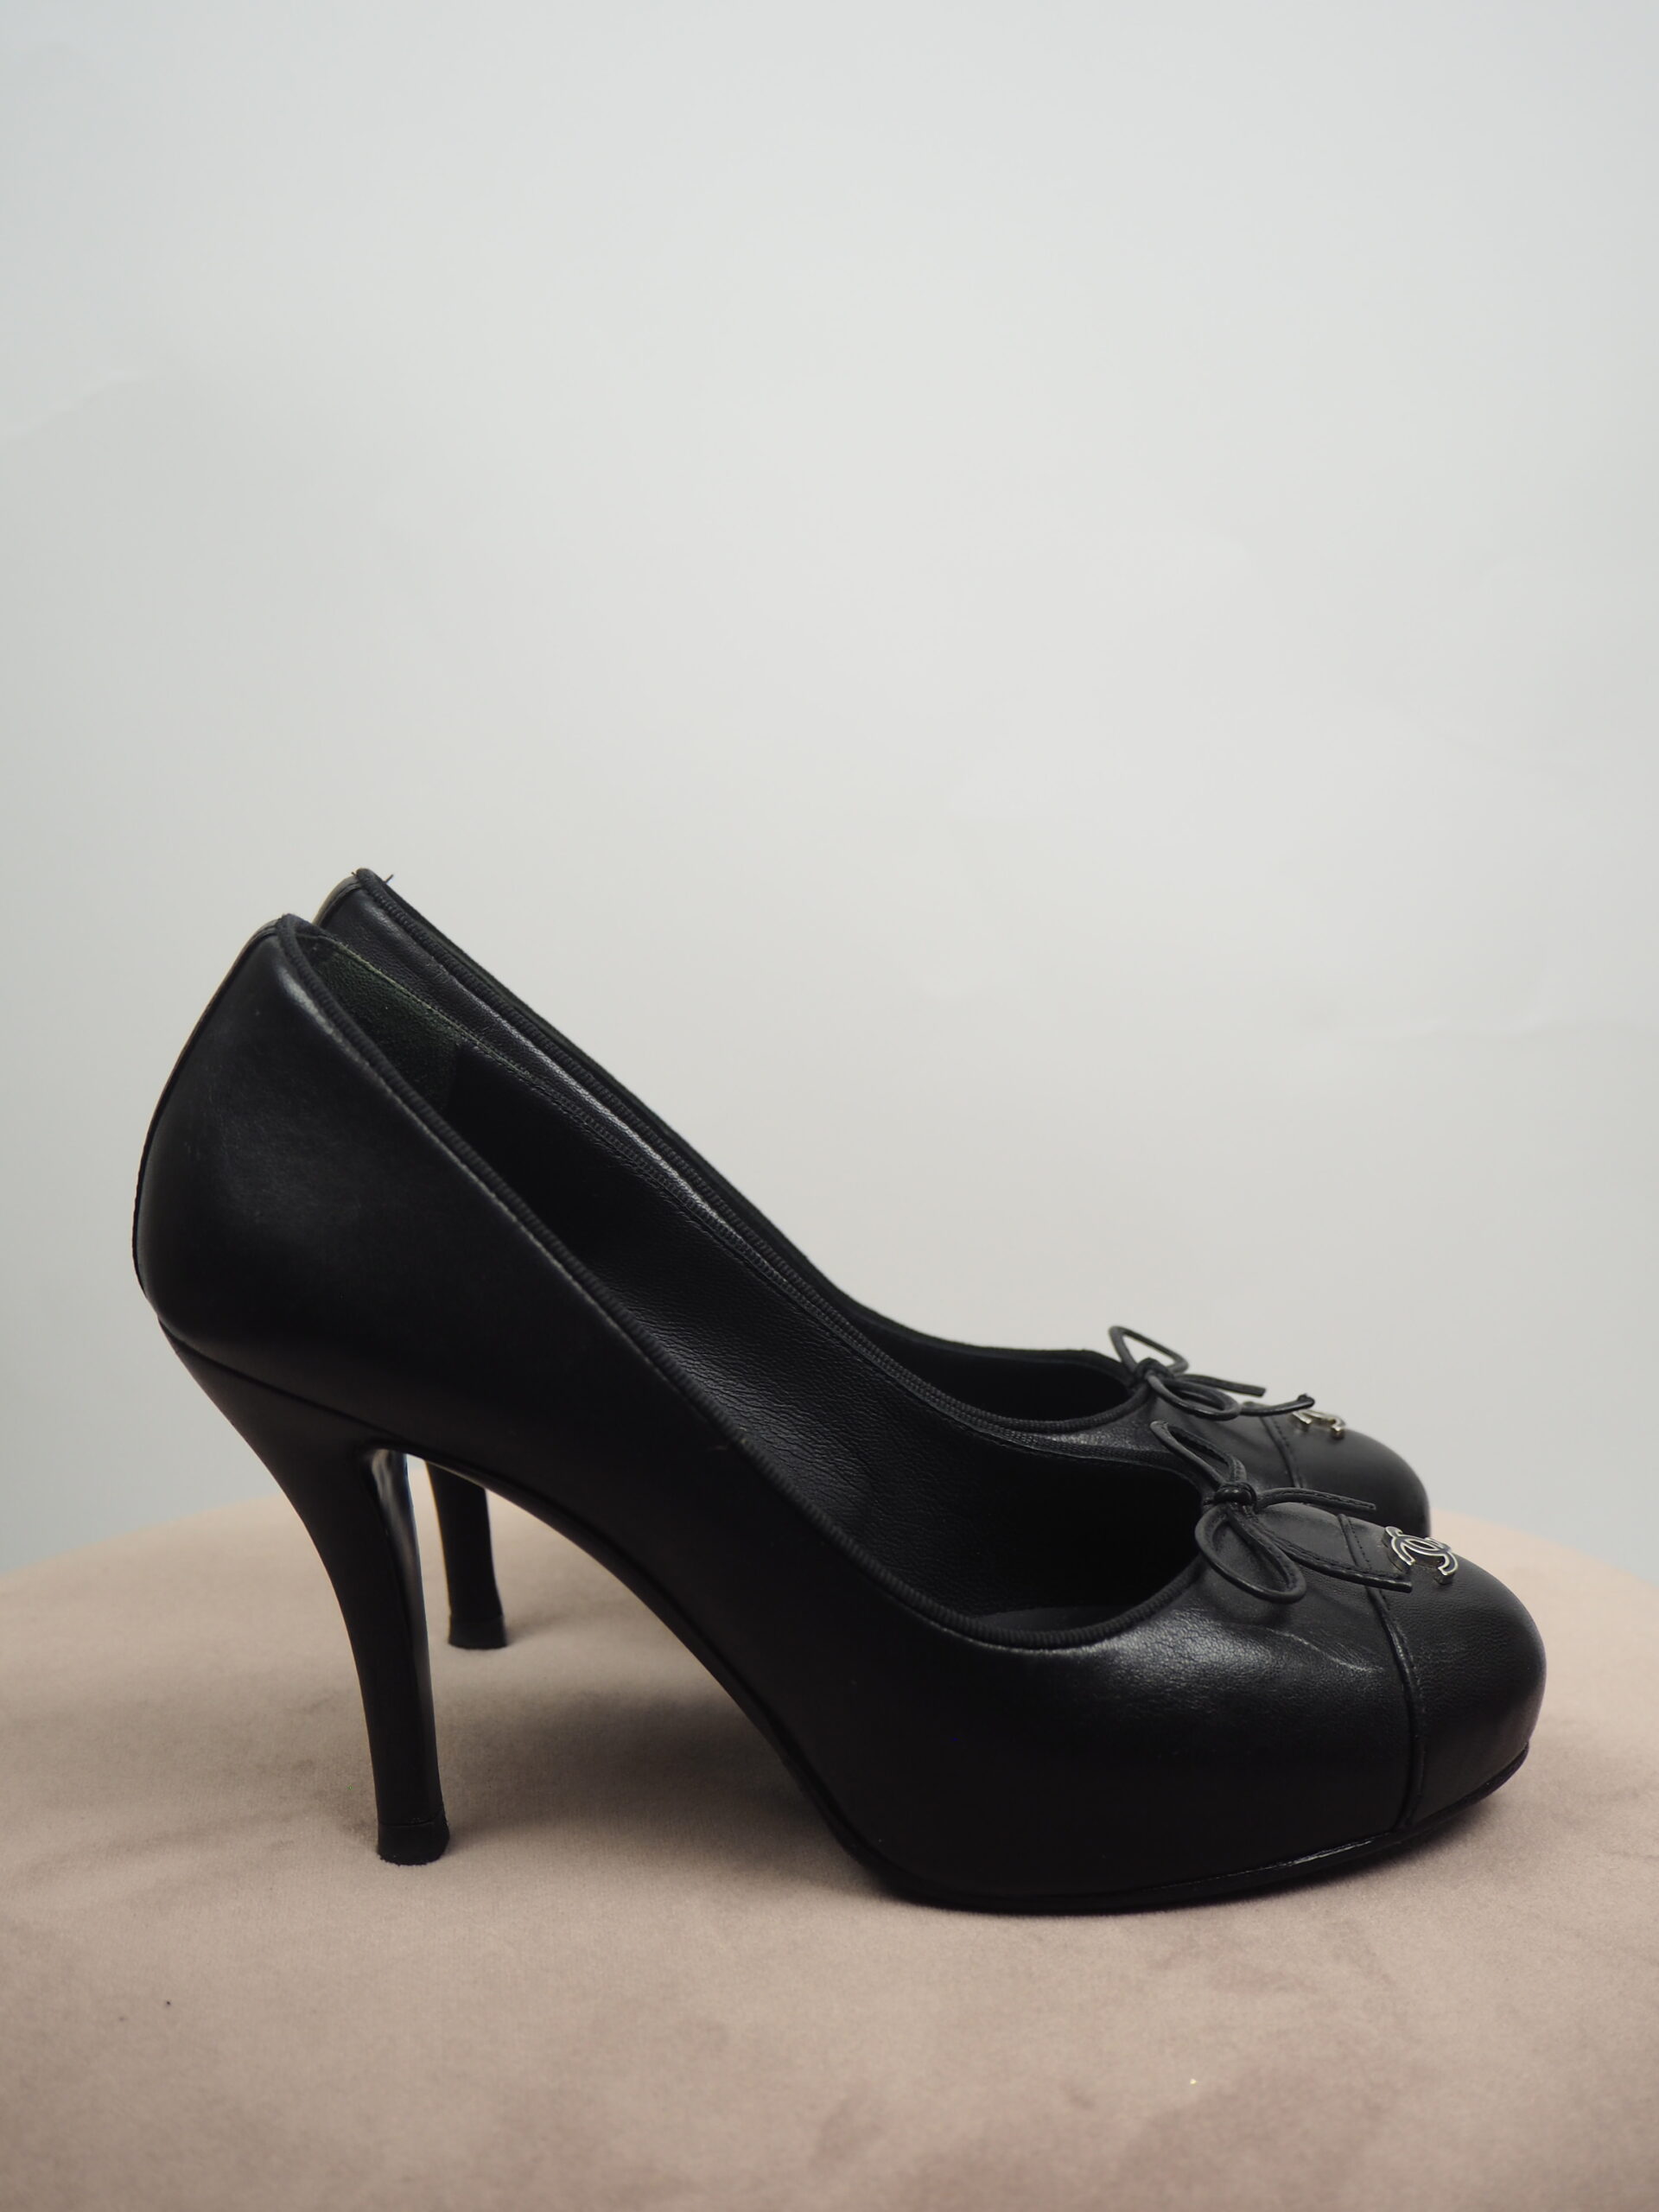 Chanel Black Leather Pumps Size 37C – Luxeparel